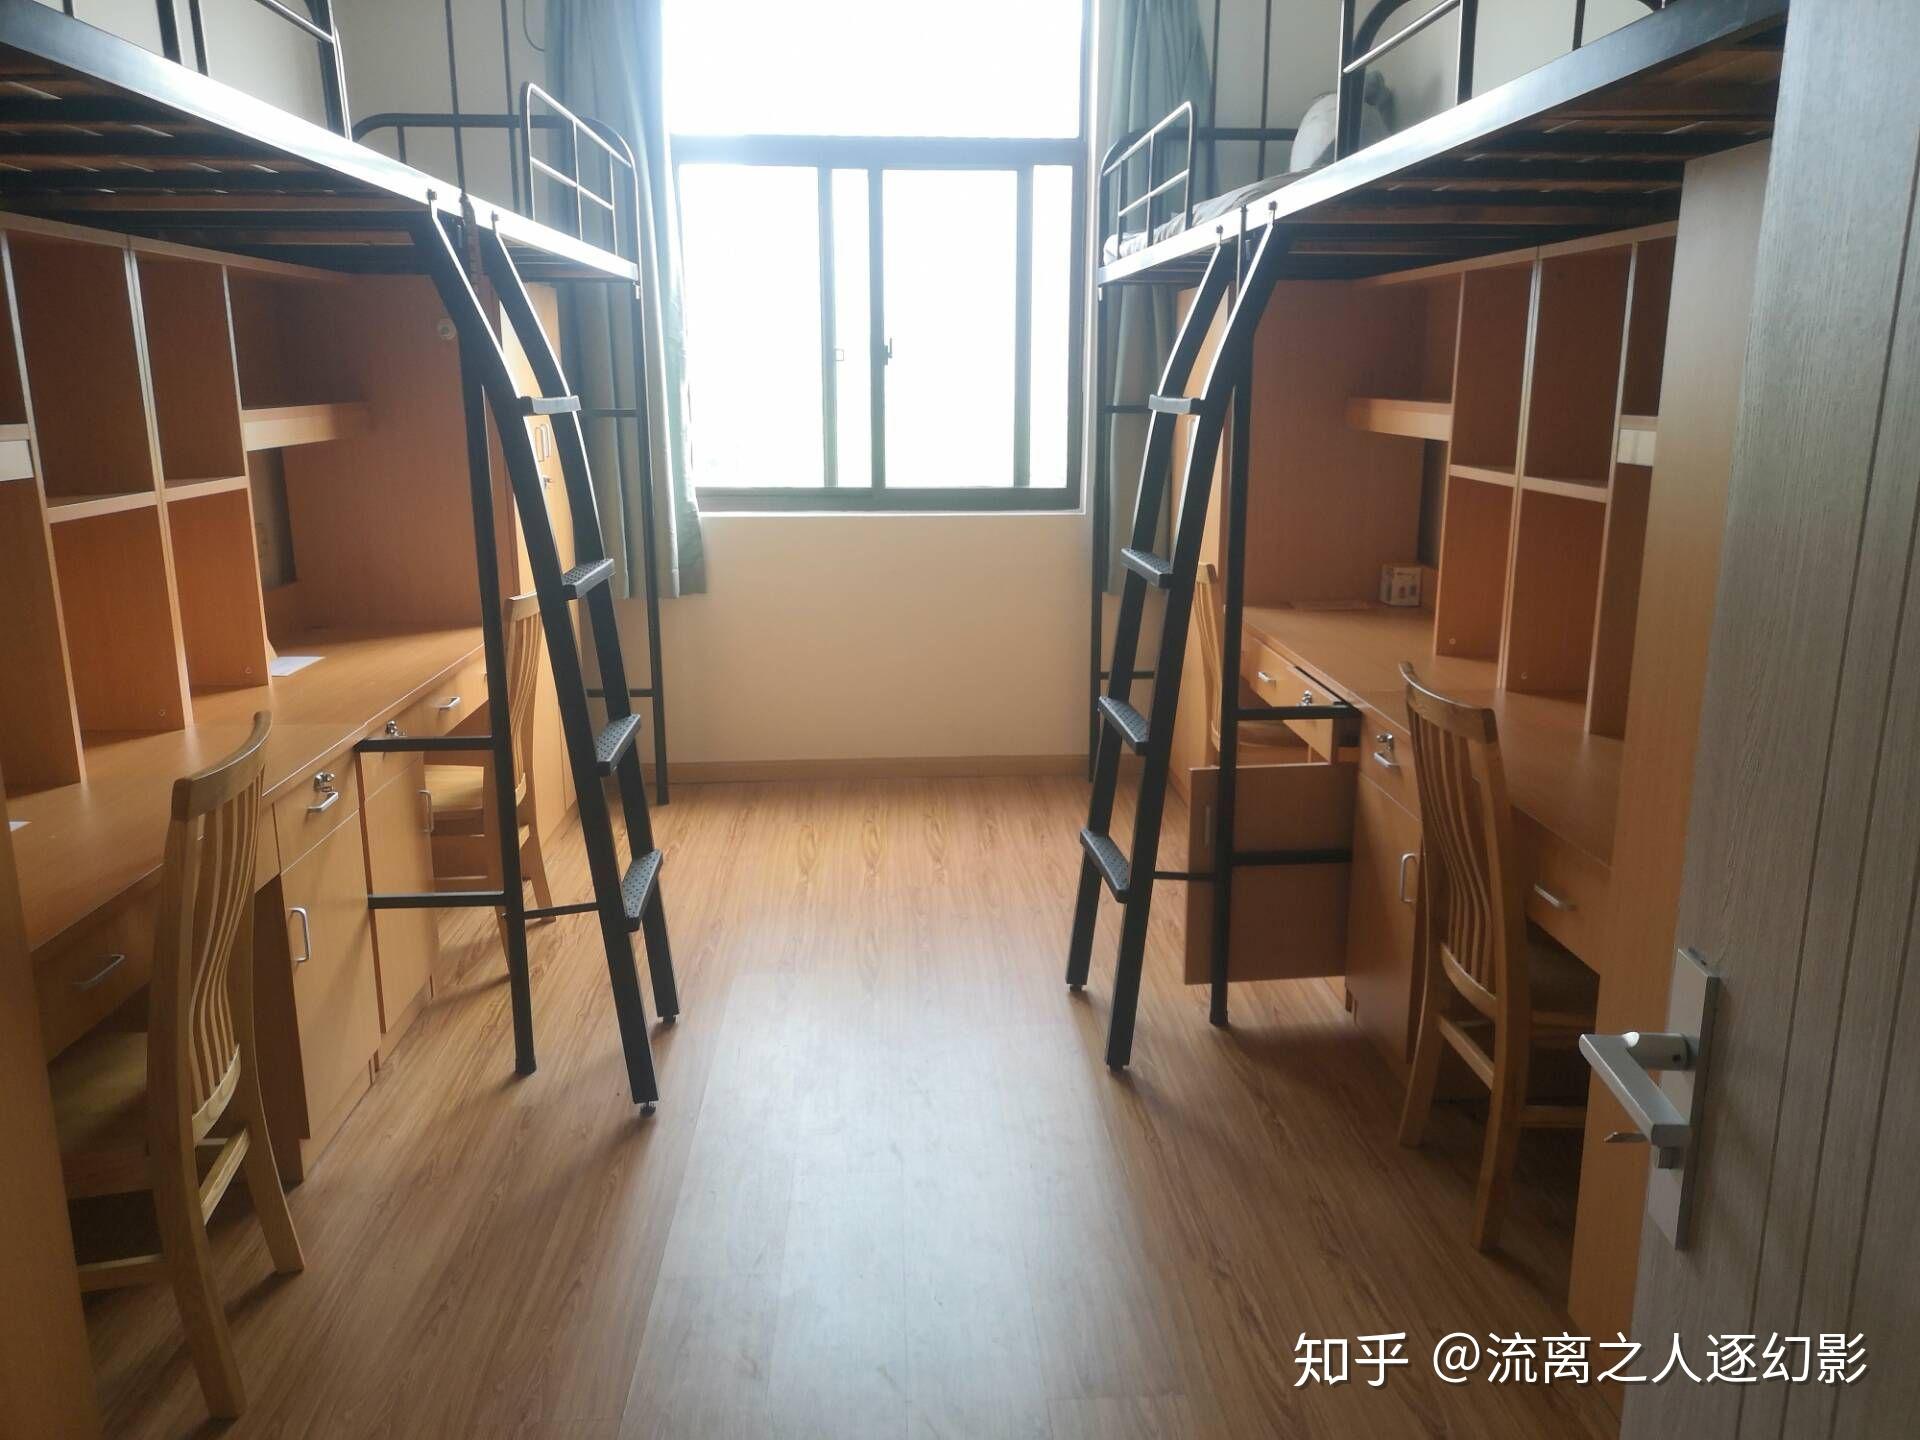 2019宿舍公寓床设计-房天下装修效果图